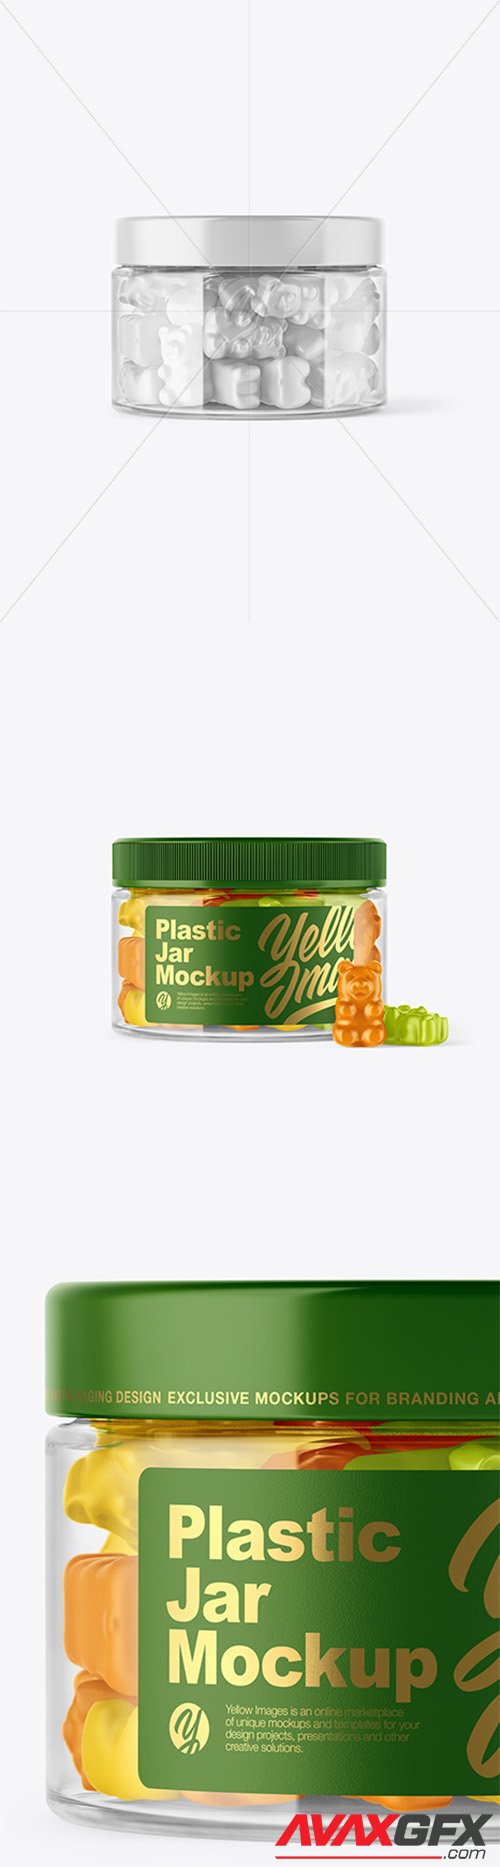 Plastic Jar with Gummies Mockup 44261